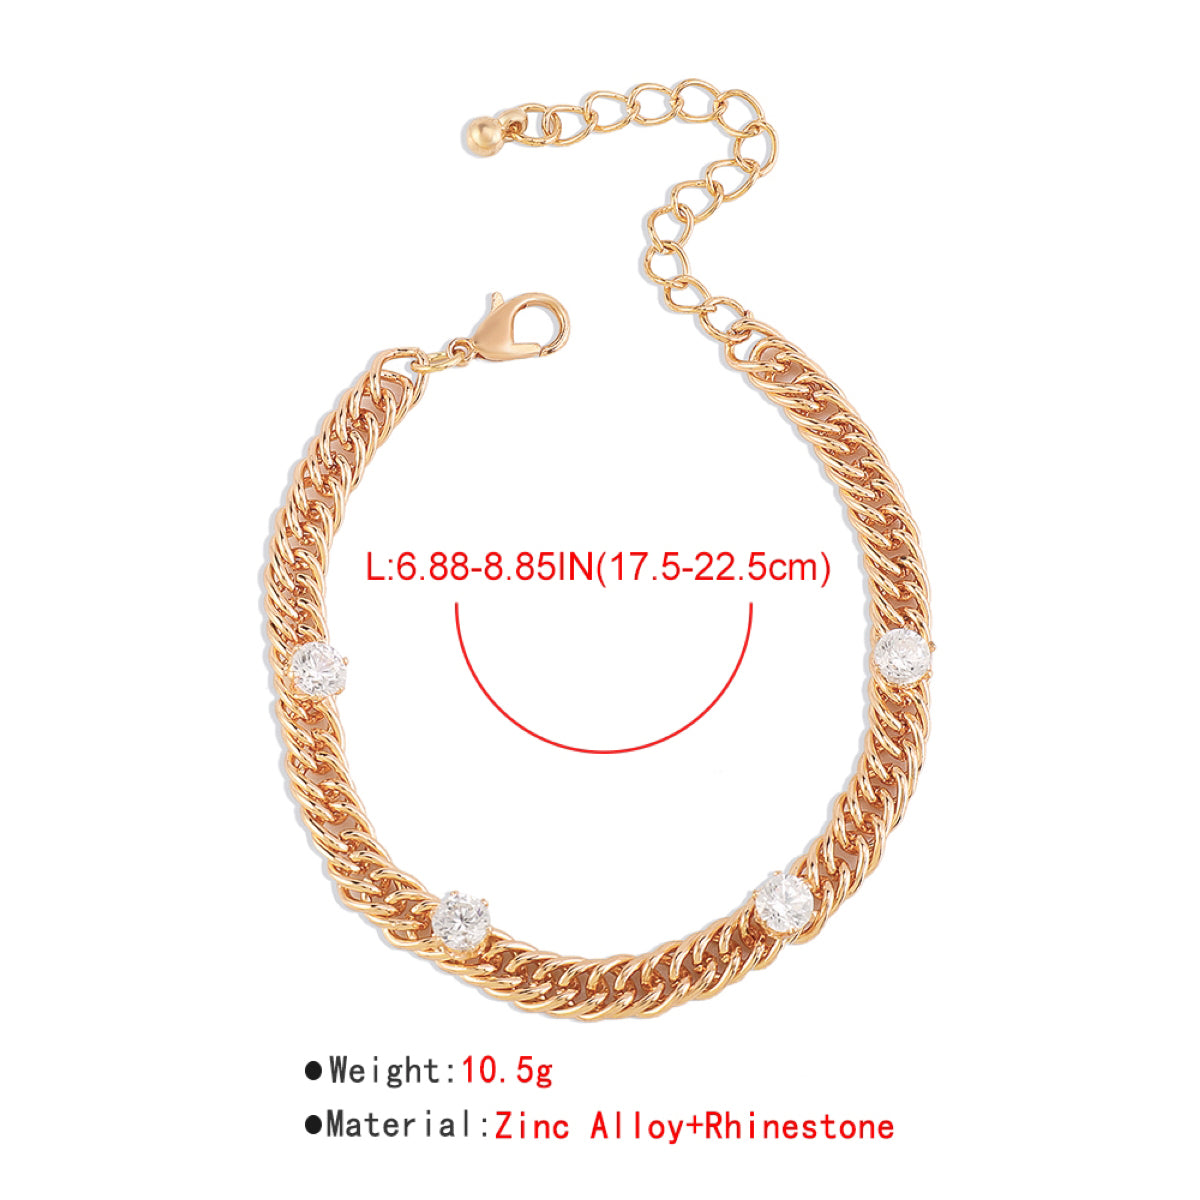 Charm Rhinestone Link Chain Bracelet medyjewelry